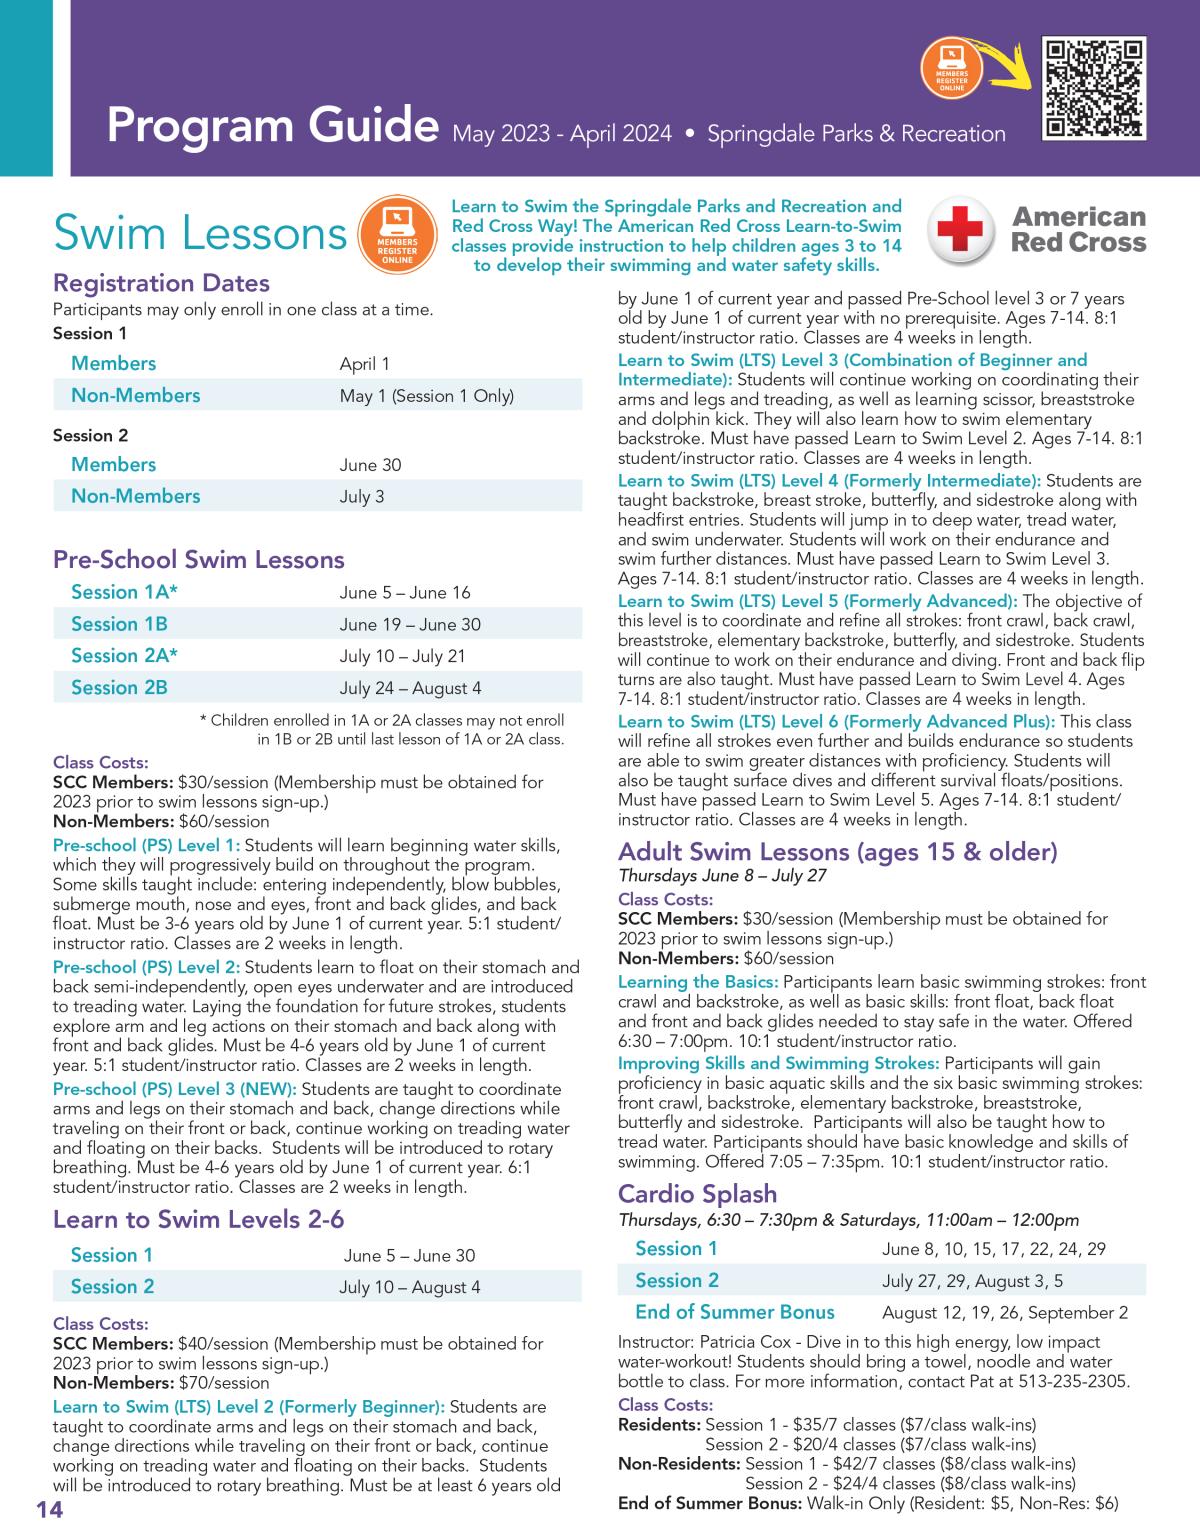 PG - Swim Lessons